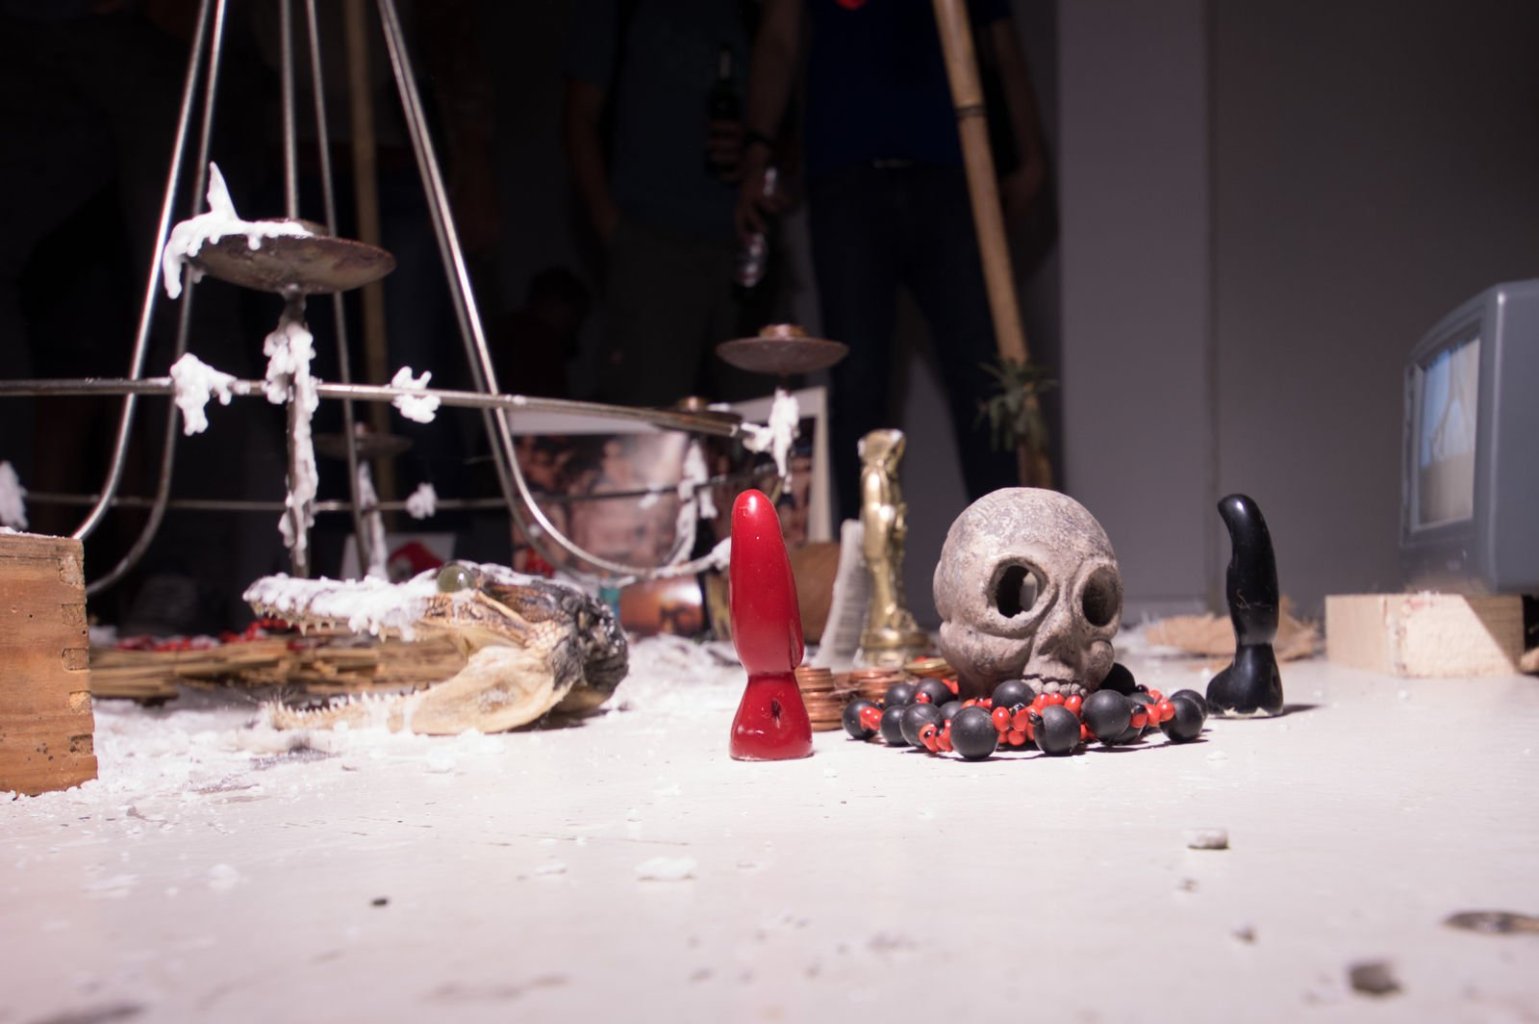 1. Stopp beim Art Spin 2016, die Galerie Savvy mit einer Ausstellung rund um das Thema Hexerei. Hier ein kleiner Schrein mit Totenkopf.